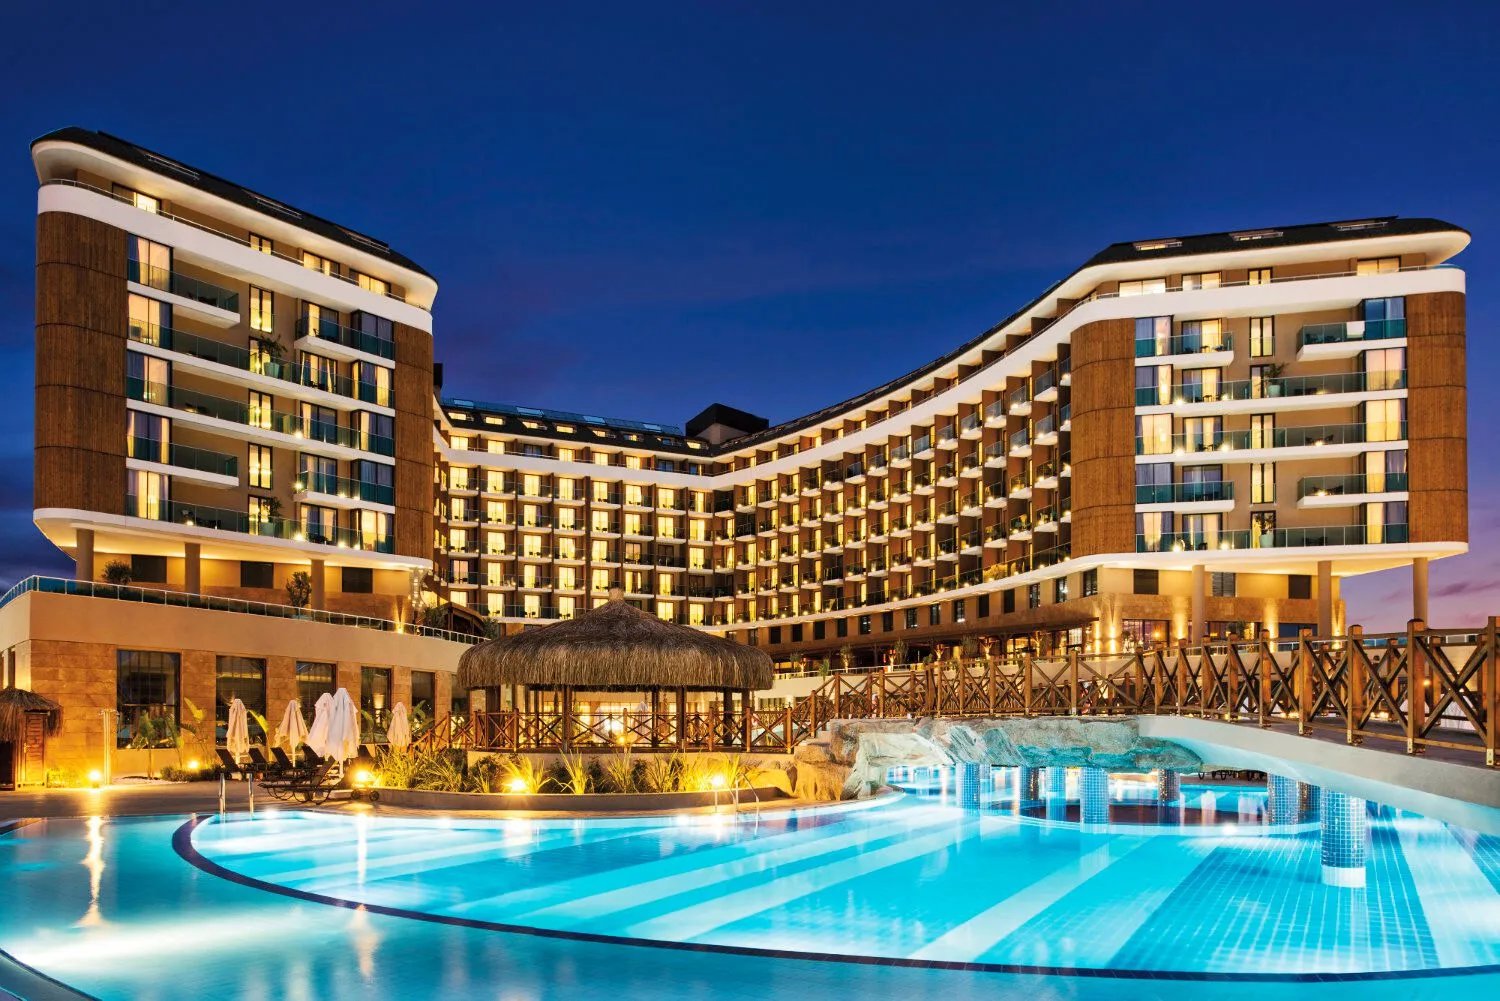 Turquie - Lara - Hôtel Aska Lara Resort & Spa 5*